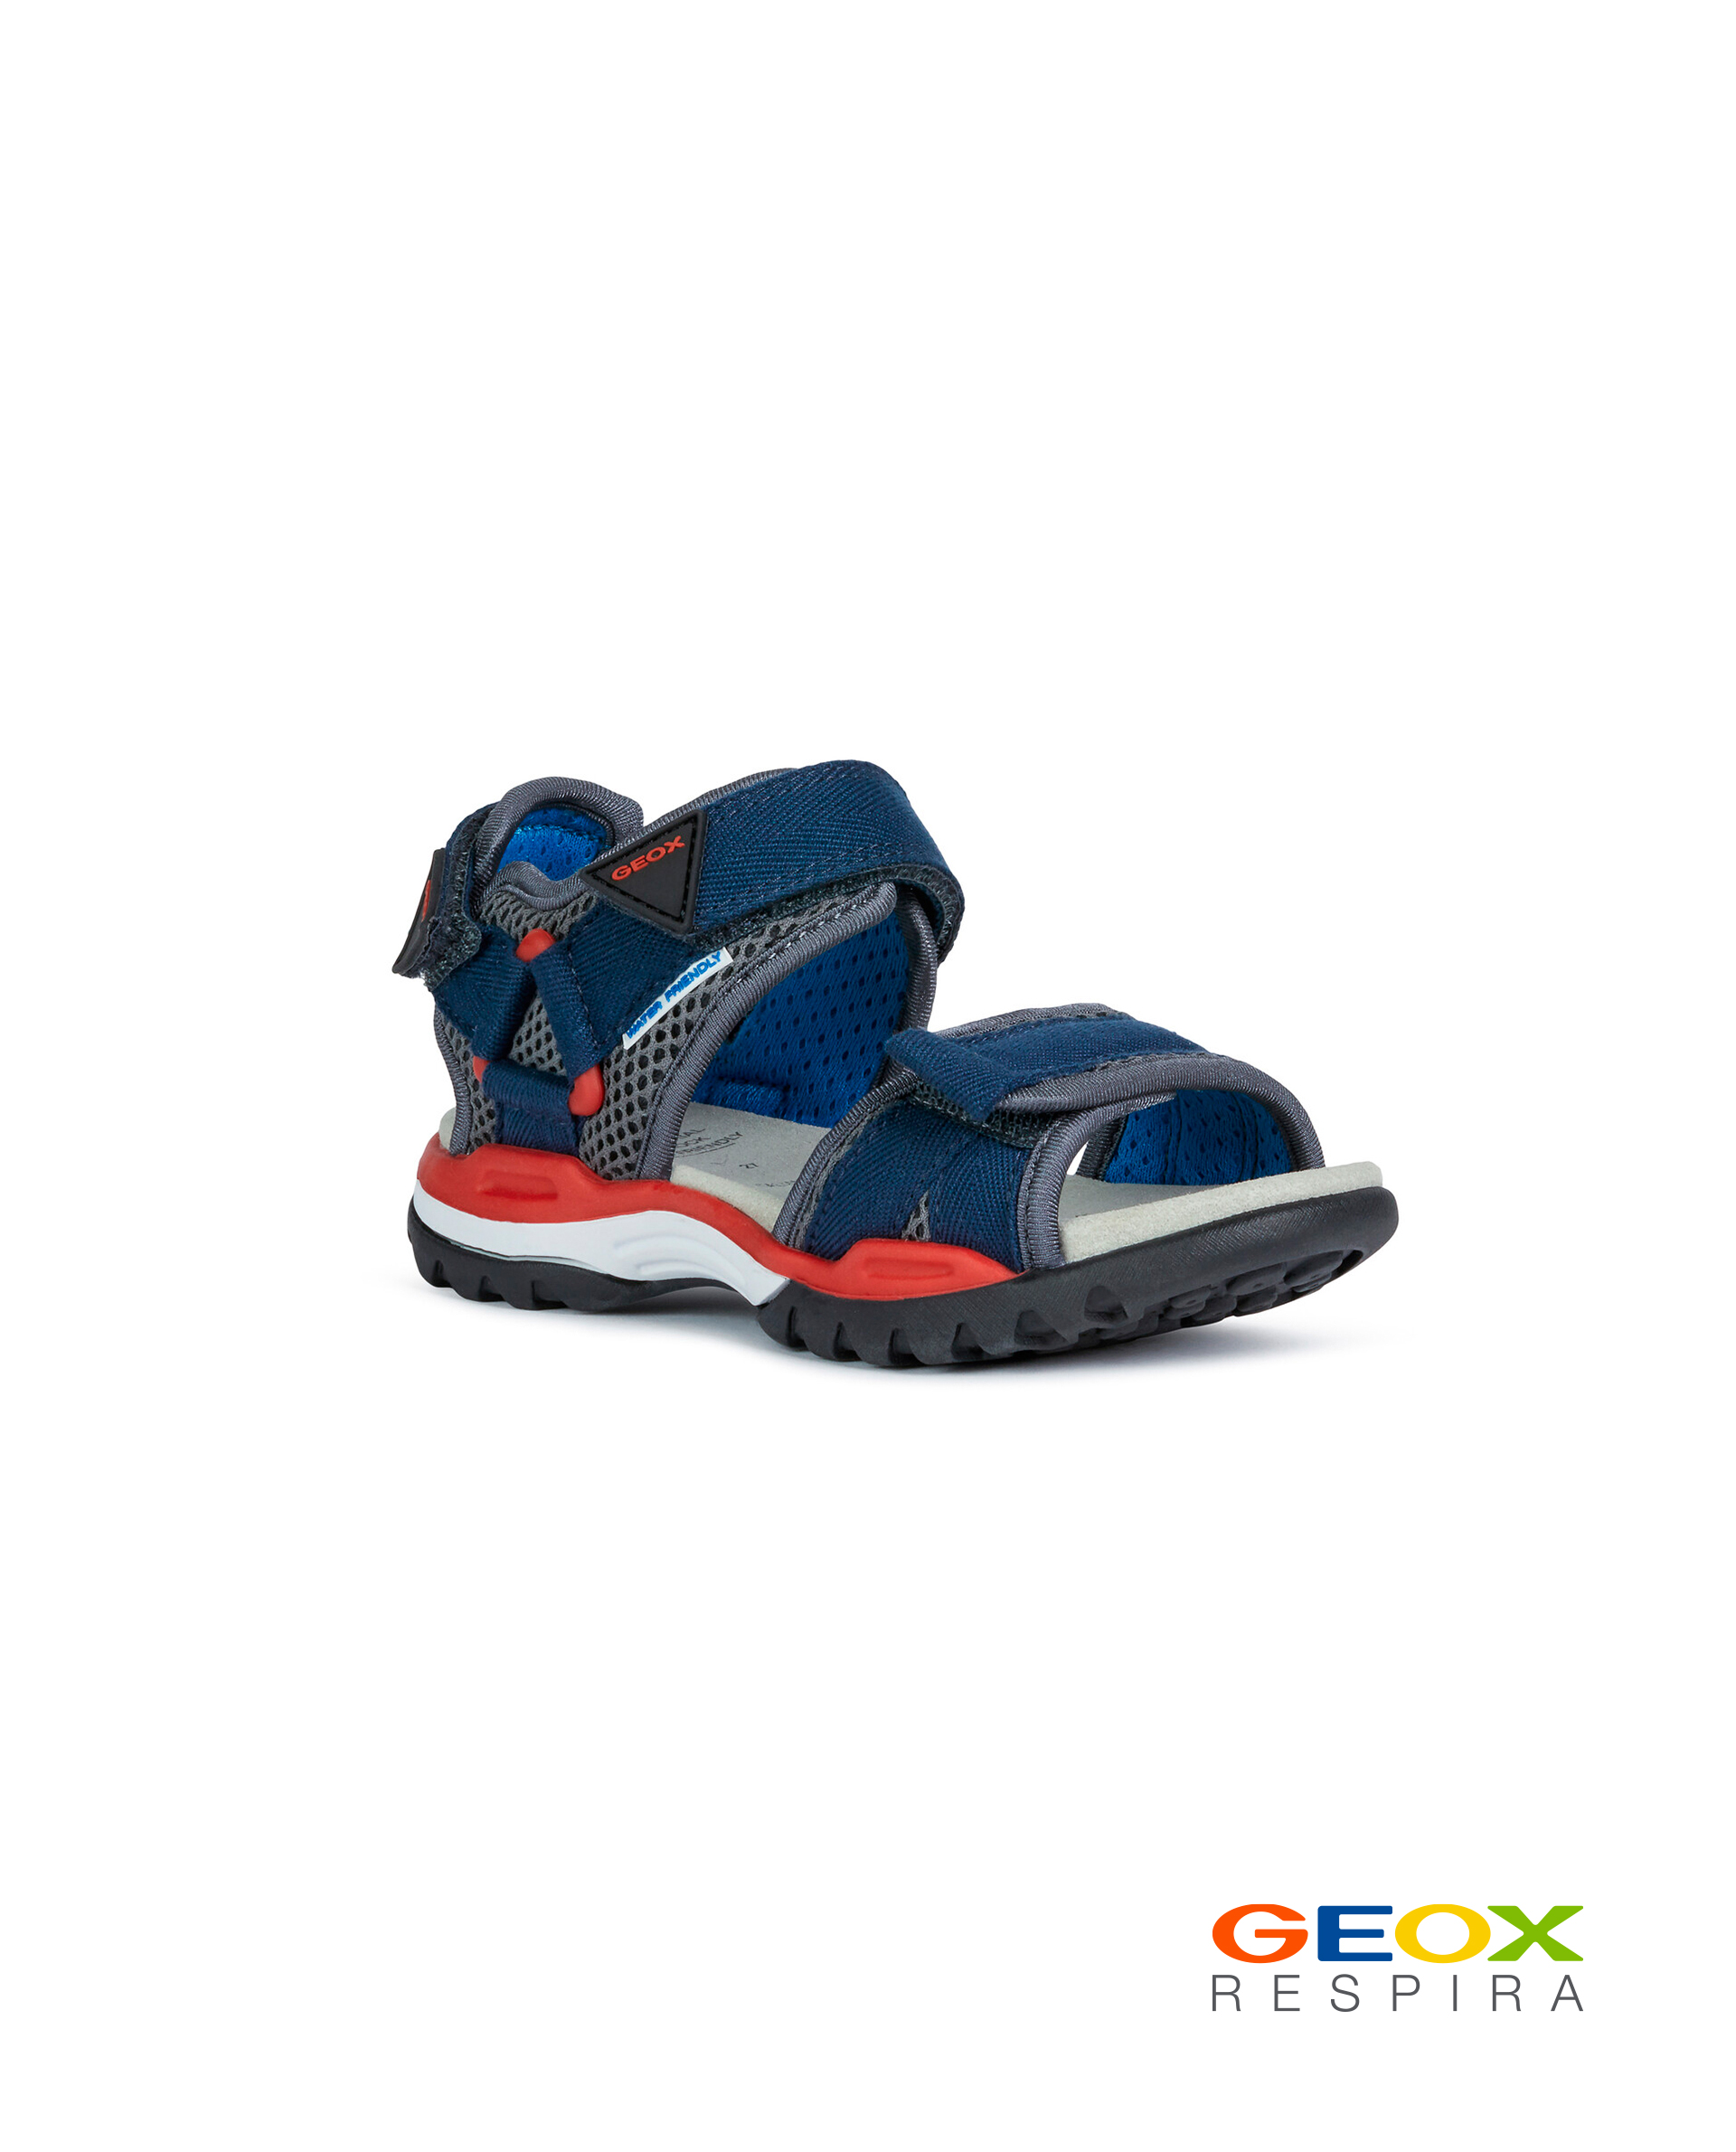 Синие сандалии Geox для мальчика J020RC01411C0735, размер 34, цвет синий - фото 1